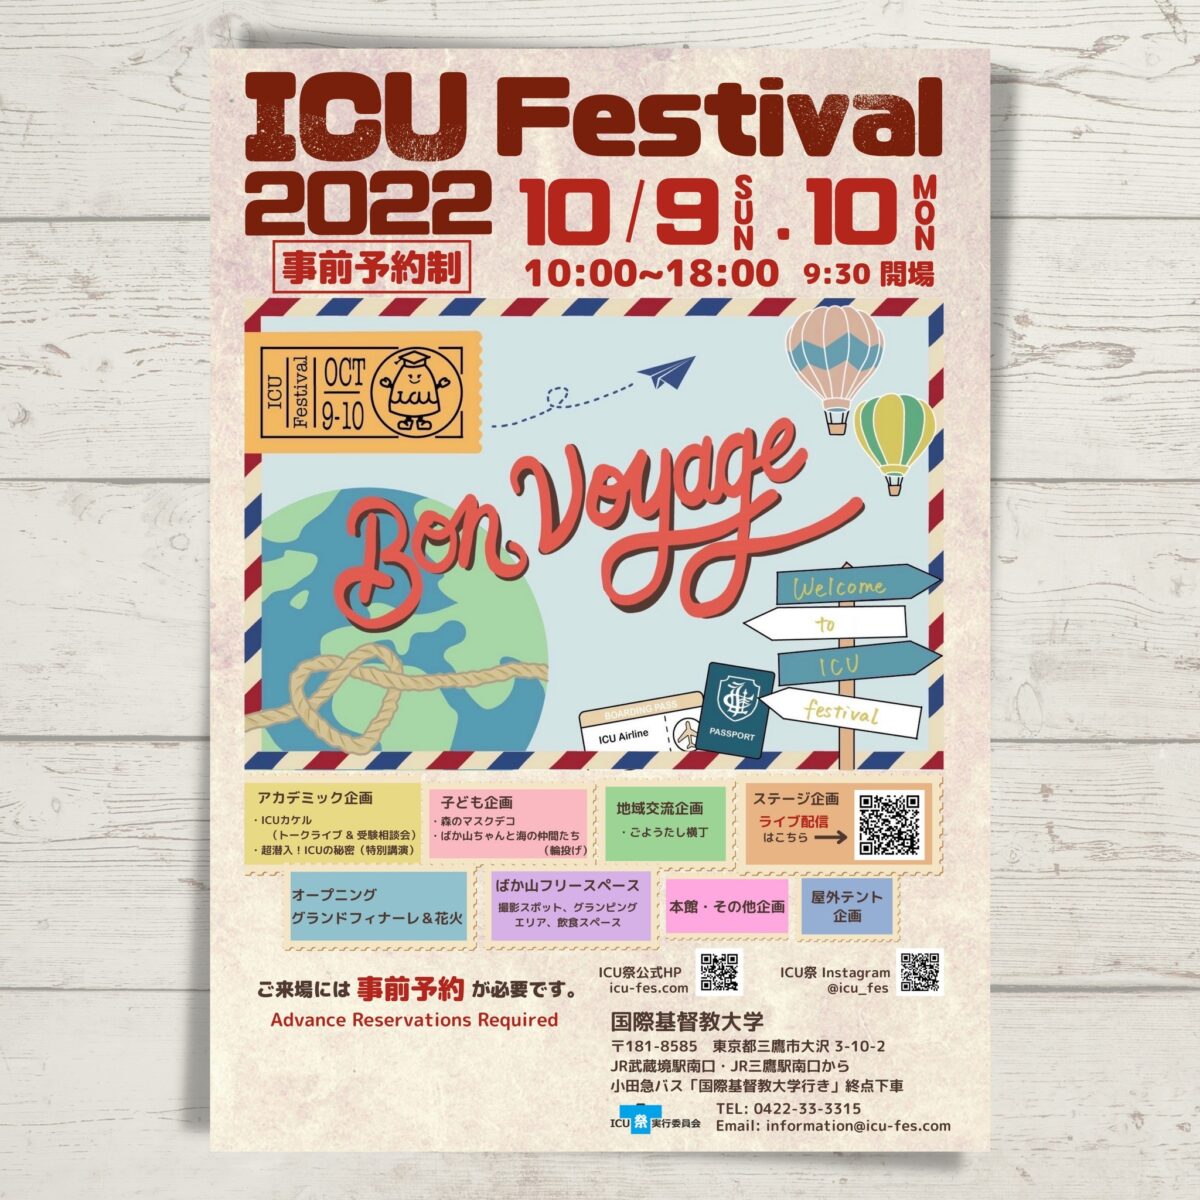 2022年10月9日(日)～ ICU祭 2022 ＠ 国際基督教大学 ( ICU ) キャンパス